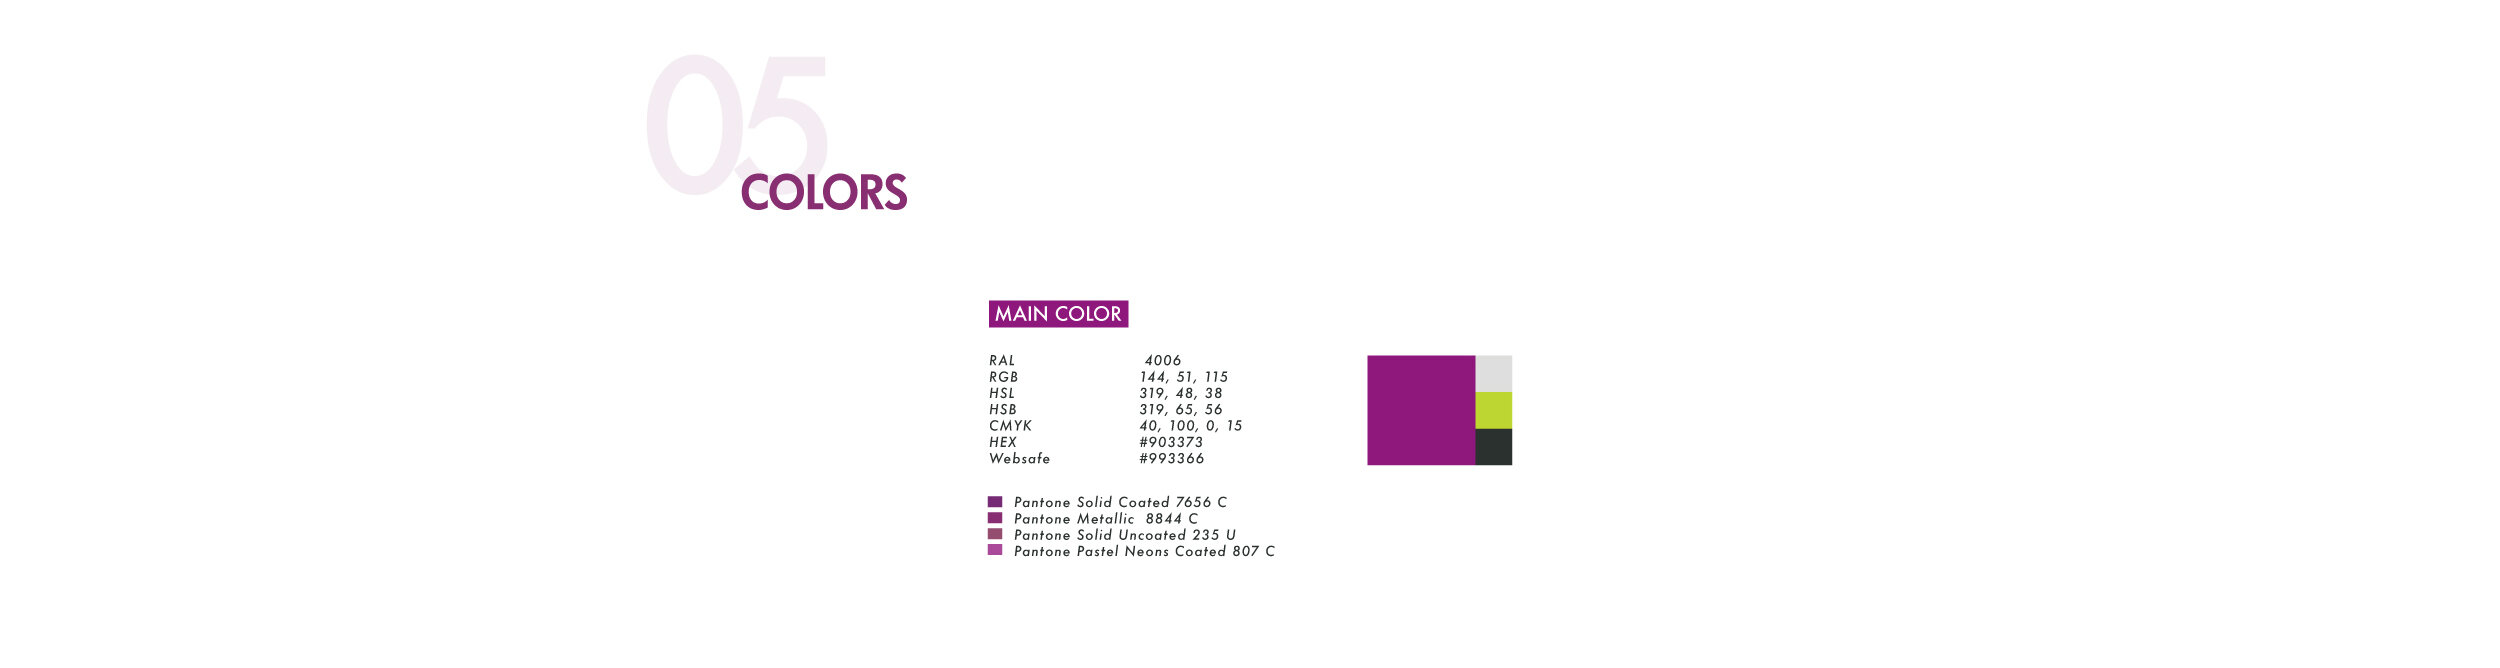 Choix des couleurs pour À Propos d'Optique